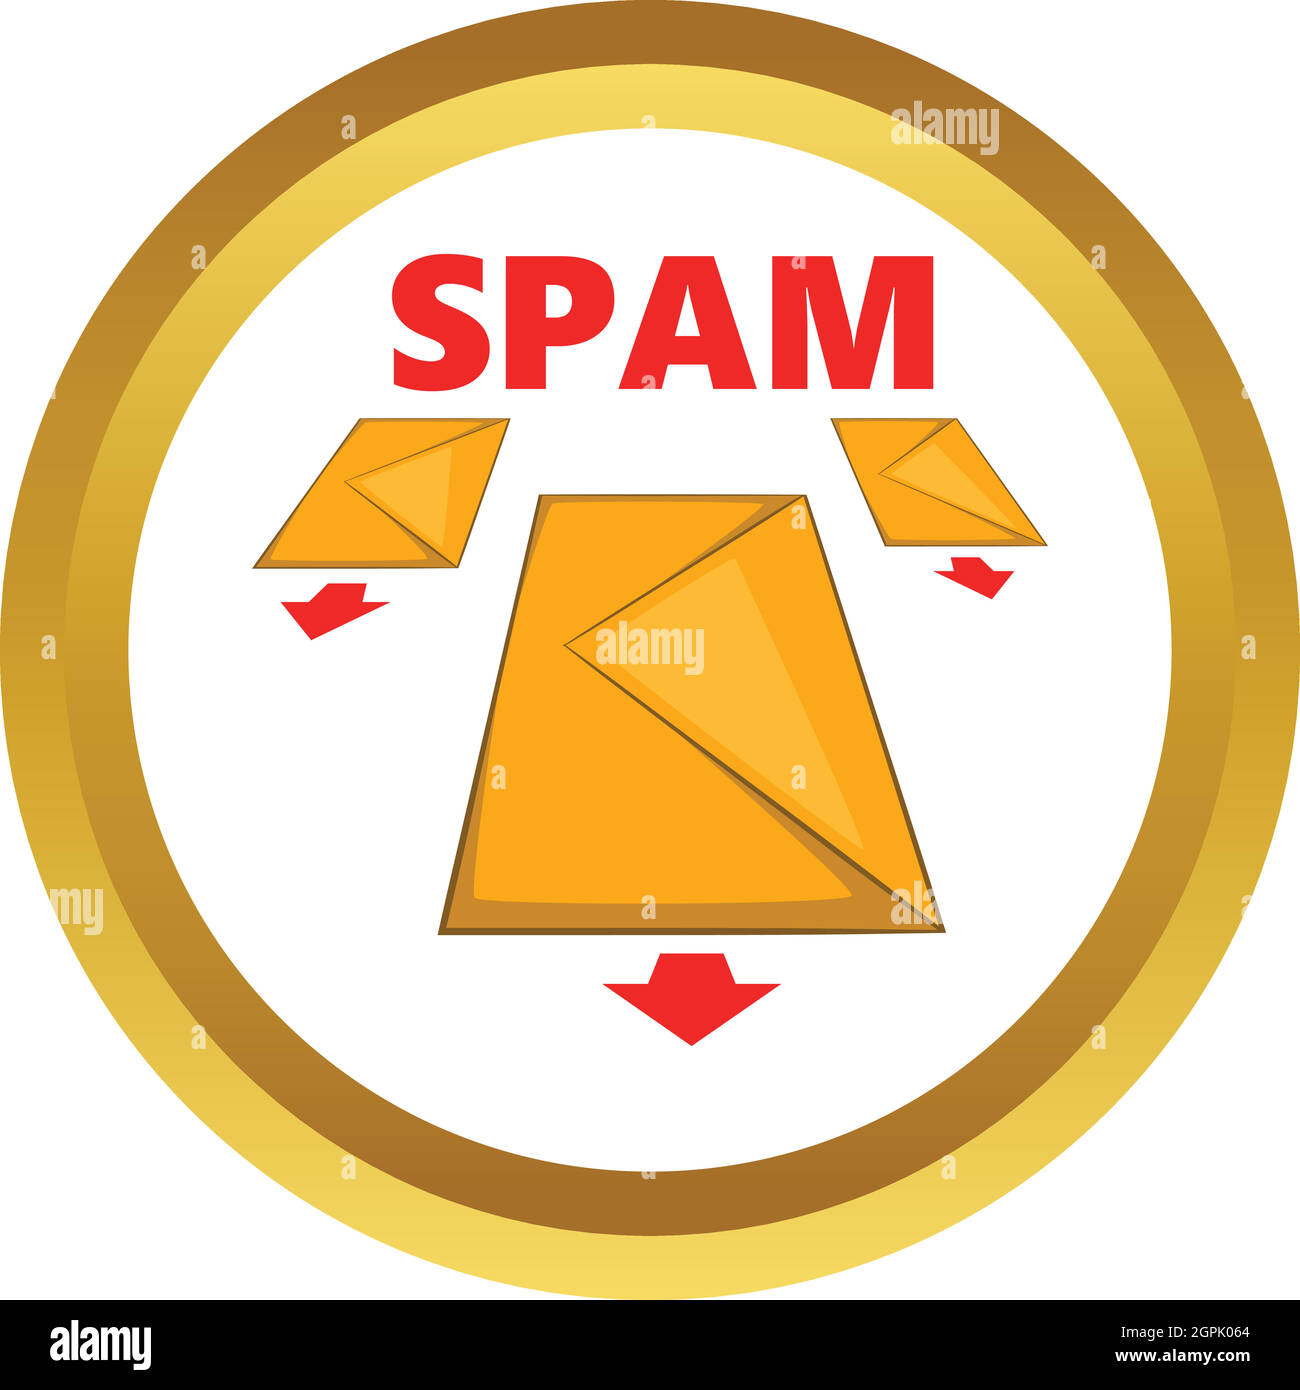 Spam envelopes vector icon Stock Vector